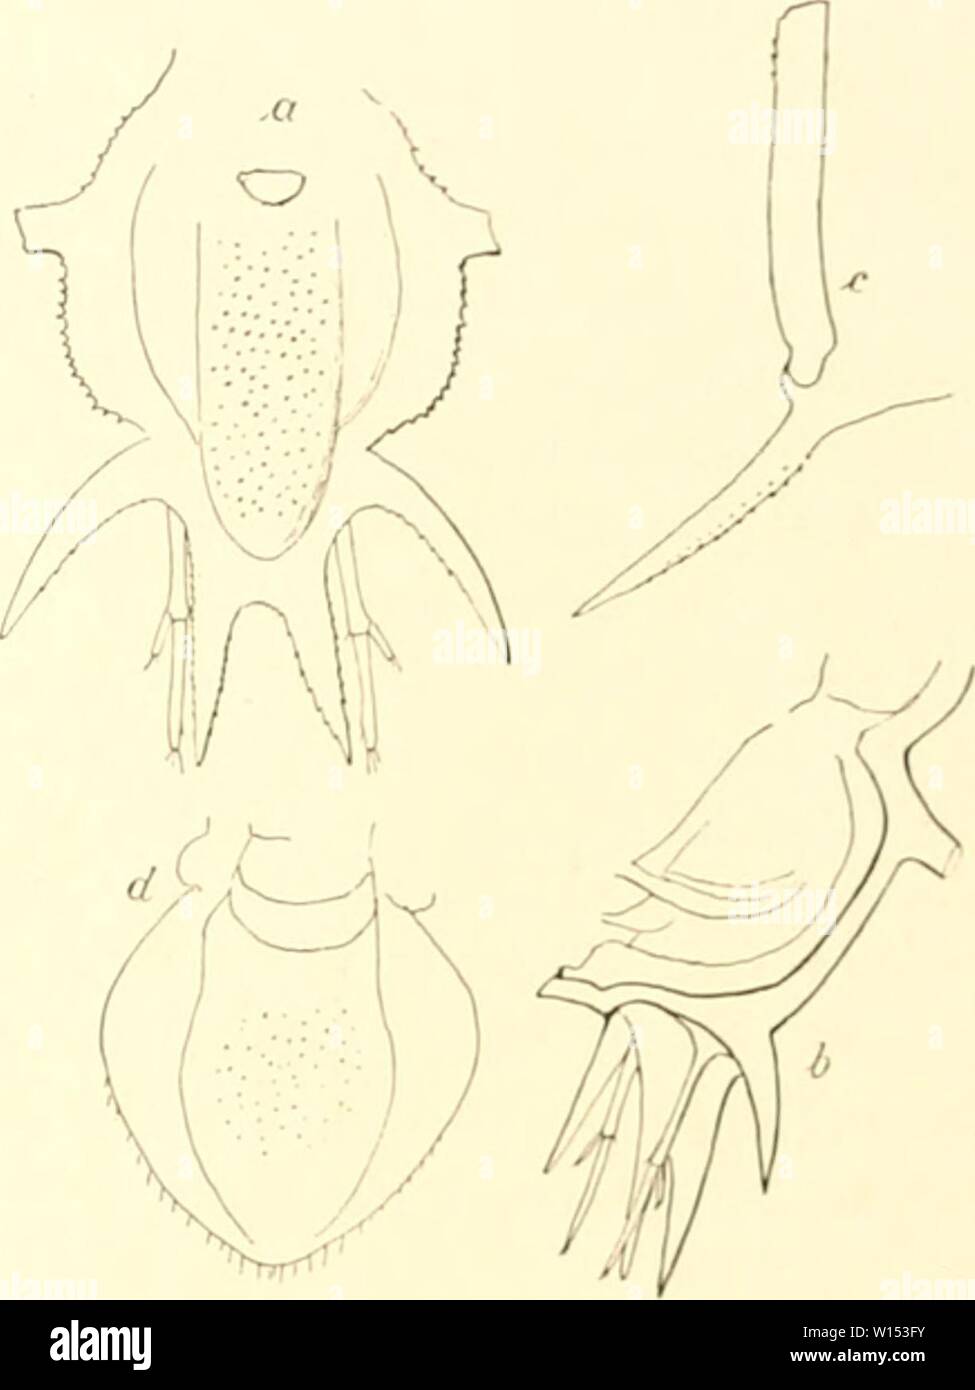 Archive image from page 108 of Die Isopoden der Deutschen Sdpolar-Expedition,. Die Isopoden der Deutschen Sdpolar-Expedition, 1901-1903 . dieisopodenderde00vanh Year: 1914  Abb. 70. Juhdlasi). (x 40). Al)l). 71. Microprulus anlarcliau&lt; n. sp. n .bdrtmeu von oben, h von der Seite (x 24), e Staehel des letzten l{tiiii|ifspgnients mit Einlenknn. (.bb. 71 t,-(l.) Zur Gattung Micropm/ua muß ich ein .bdomcn von etwa 2 mm Länge (.M&gt;1&gt;. 71 »/. /») rechnen, welches im gleichen Fanüe wie Juhttillic itcitnlhomilns am :{o. ill. l'.MtS aus :};i!ts m Tiefe iierauf- kam. Leider war außer diesem n Stock Photo